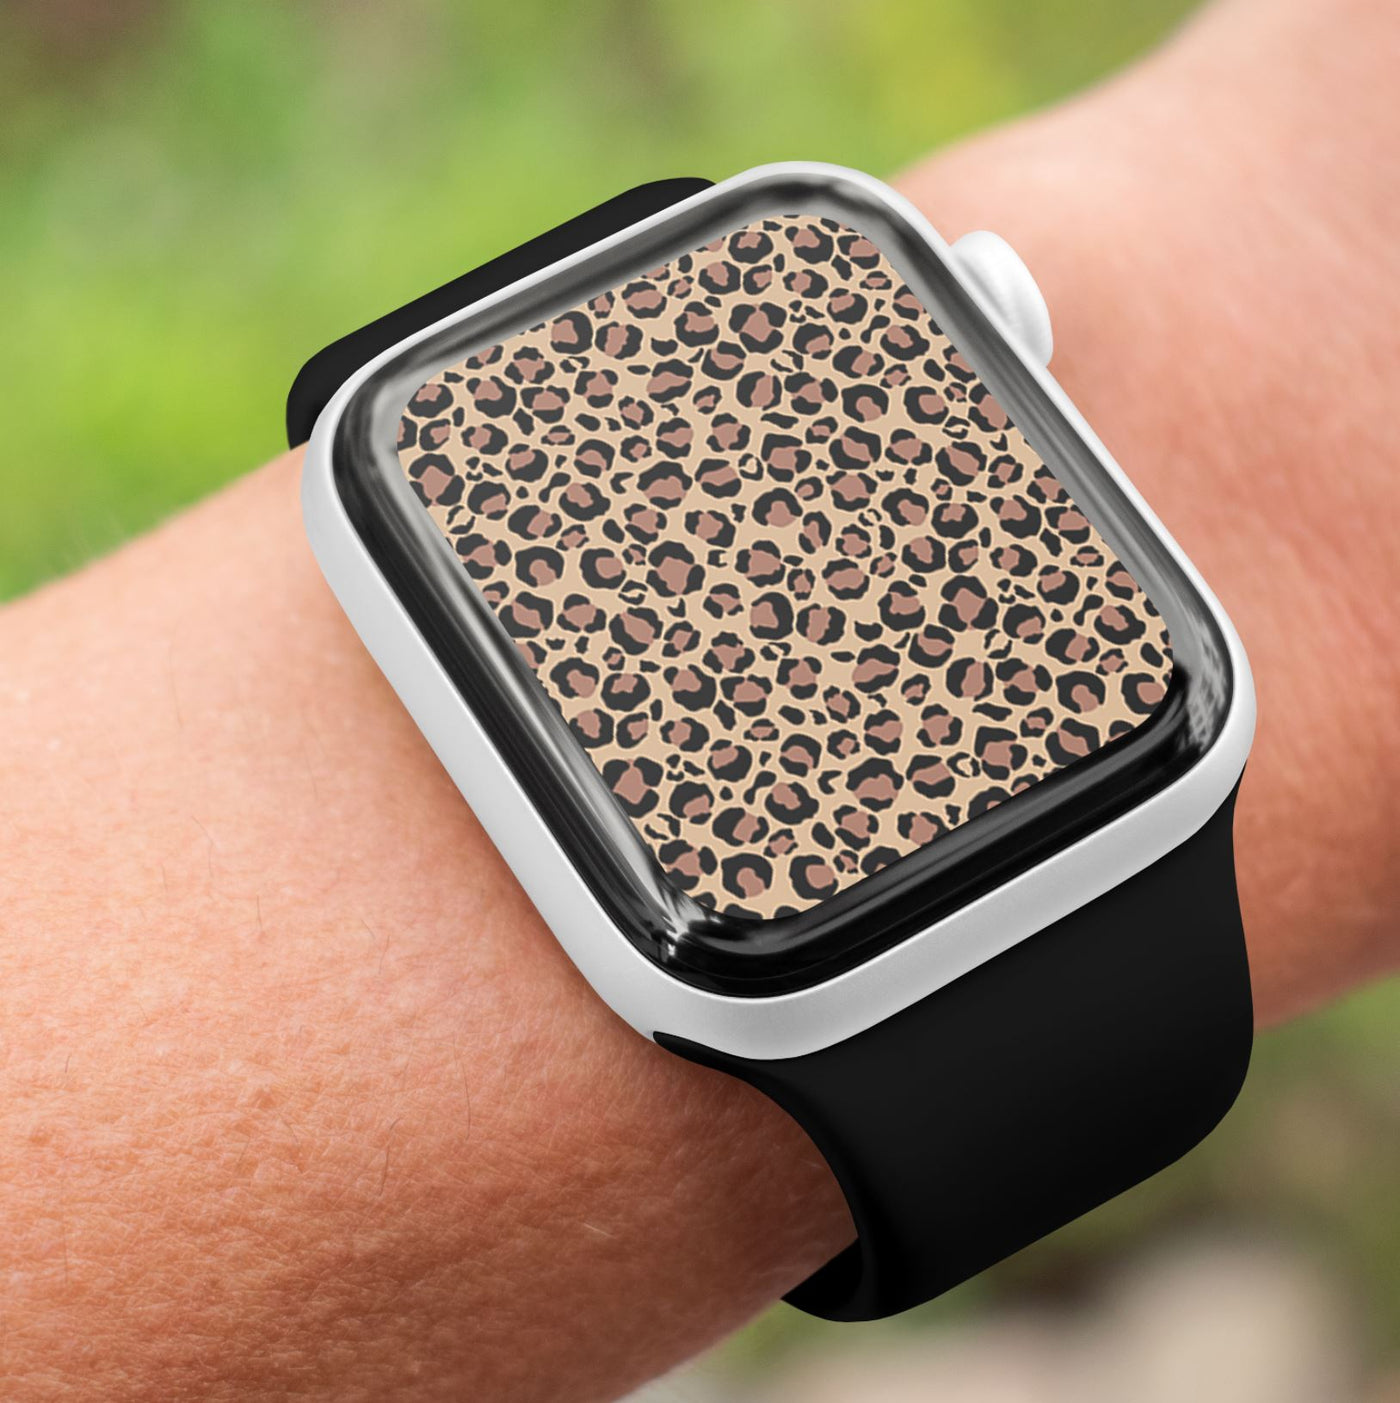 Leopard - Watch Wallpaper